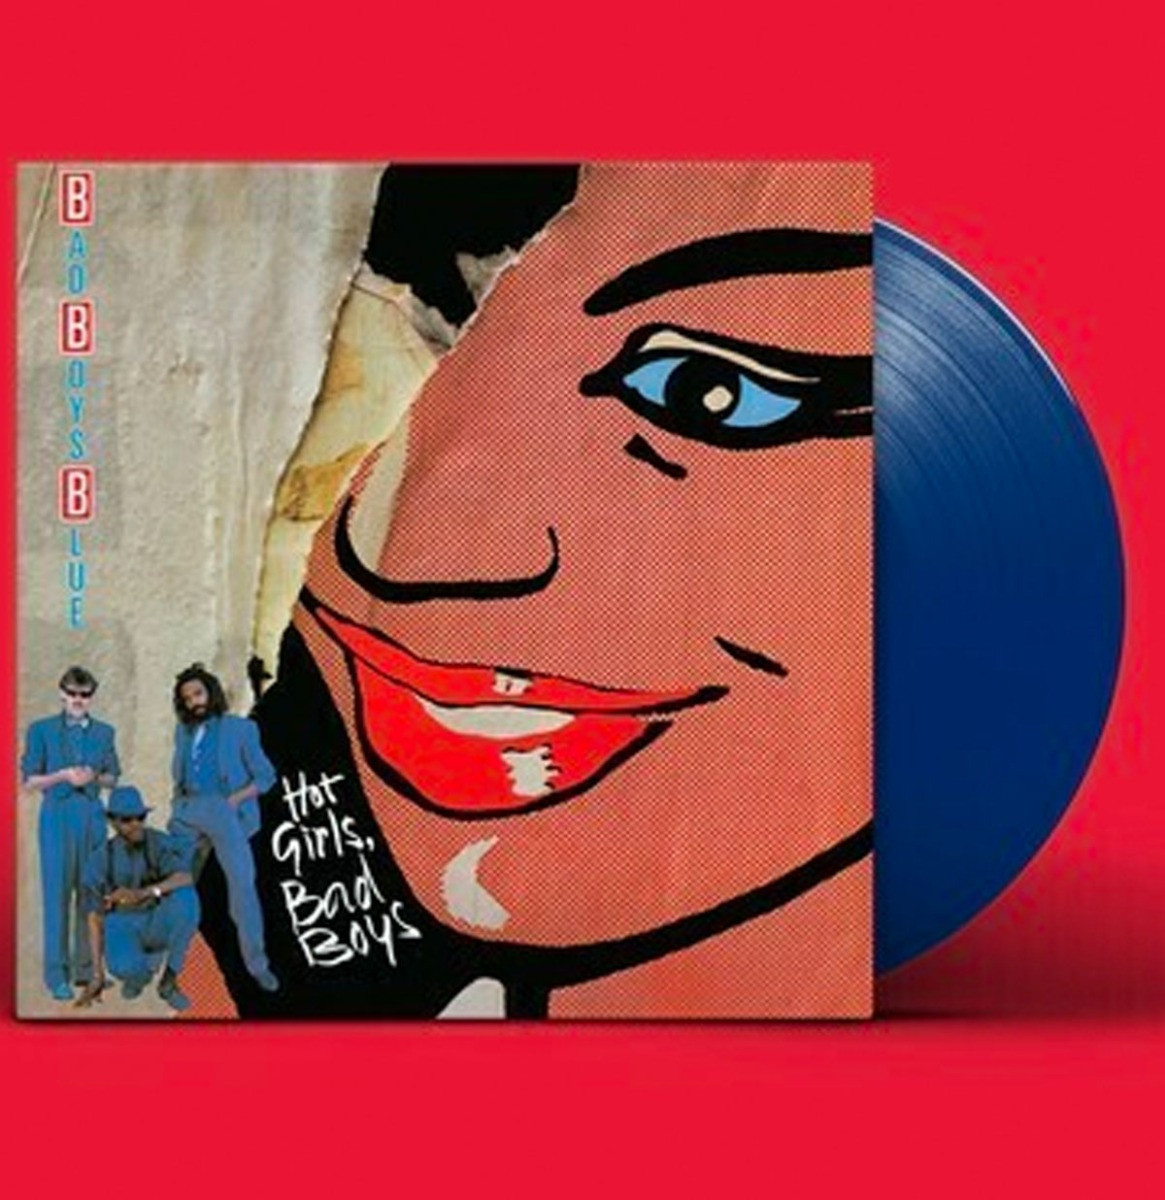 Bad Boys Blue - Hot Girls, Bad Boys LP Blauw Vinyl ZEER GELIMITEERD